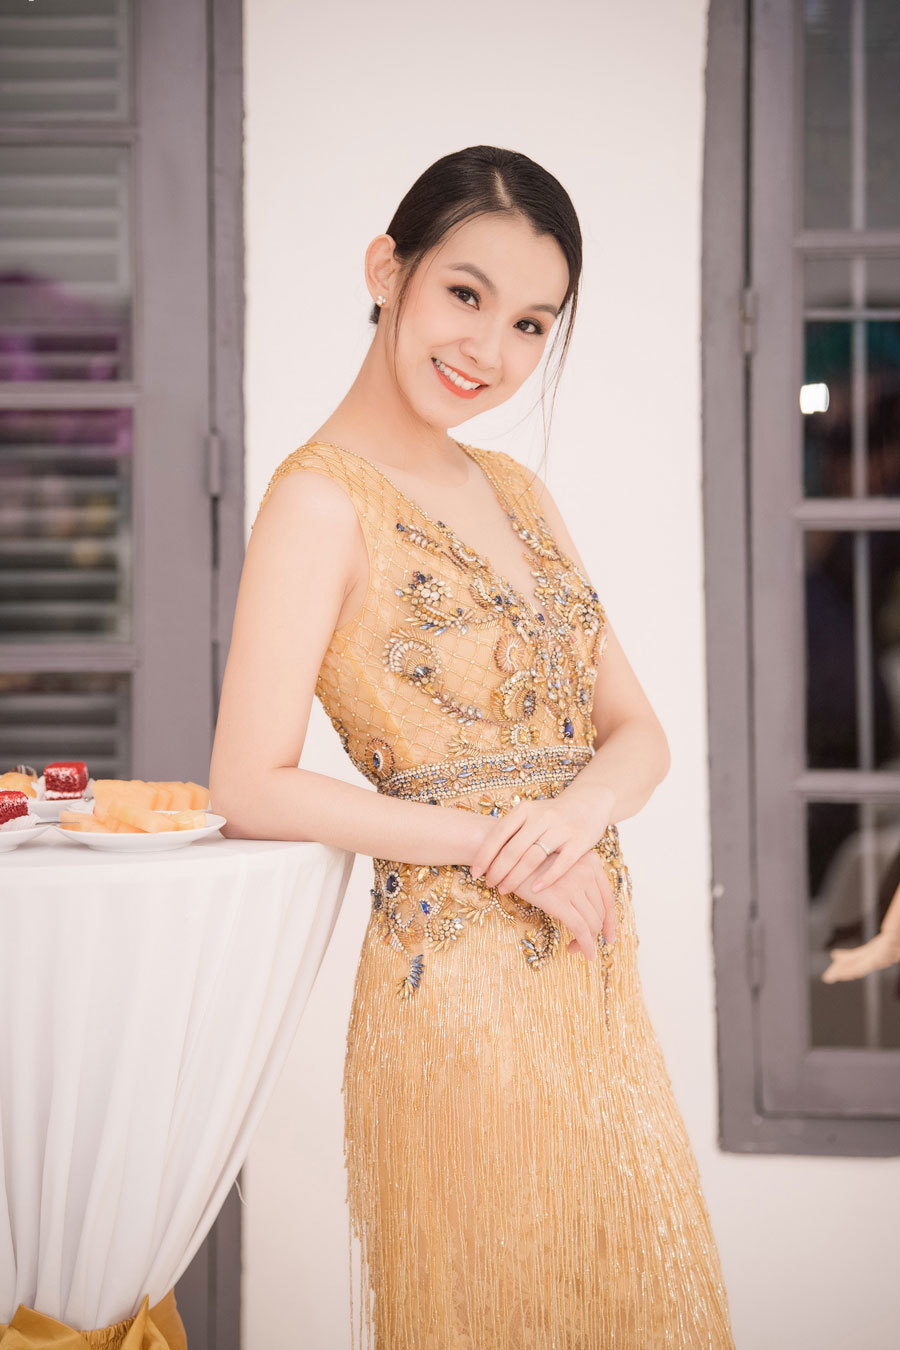 Hoa hậu Thuỳ Lâm rất hiếm khi tham gia các sự kiện đông người. Cùng trong năm 2018, vì mối quan hệ thân thiết với NTK Lê Thanh Hoà nên chị nhận lời tham gia sự kiện ra mắt showroom của anh tại Hà Nội.